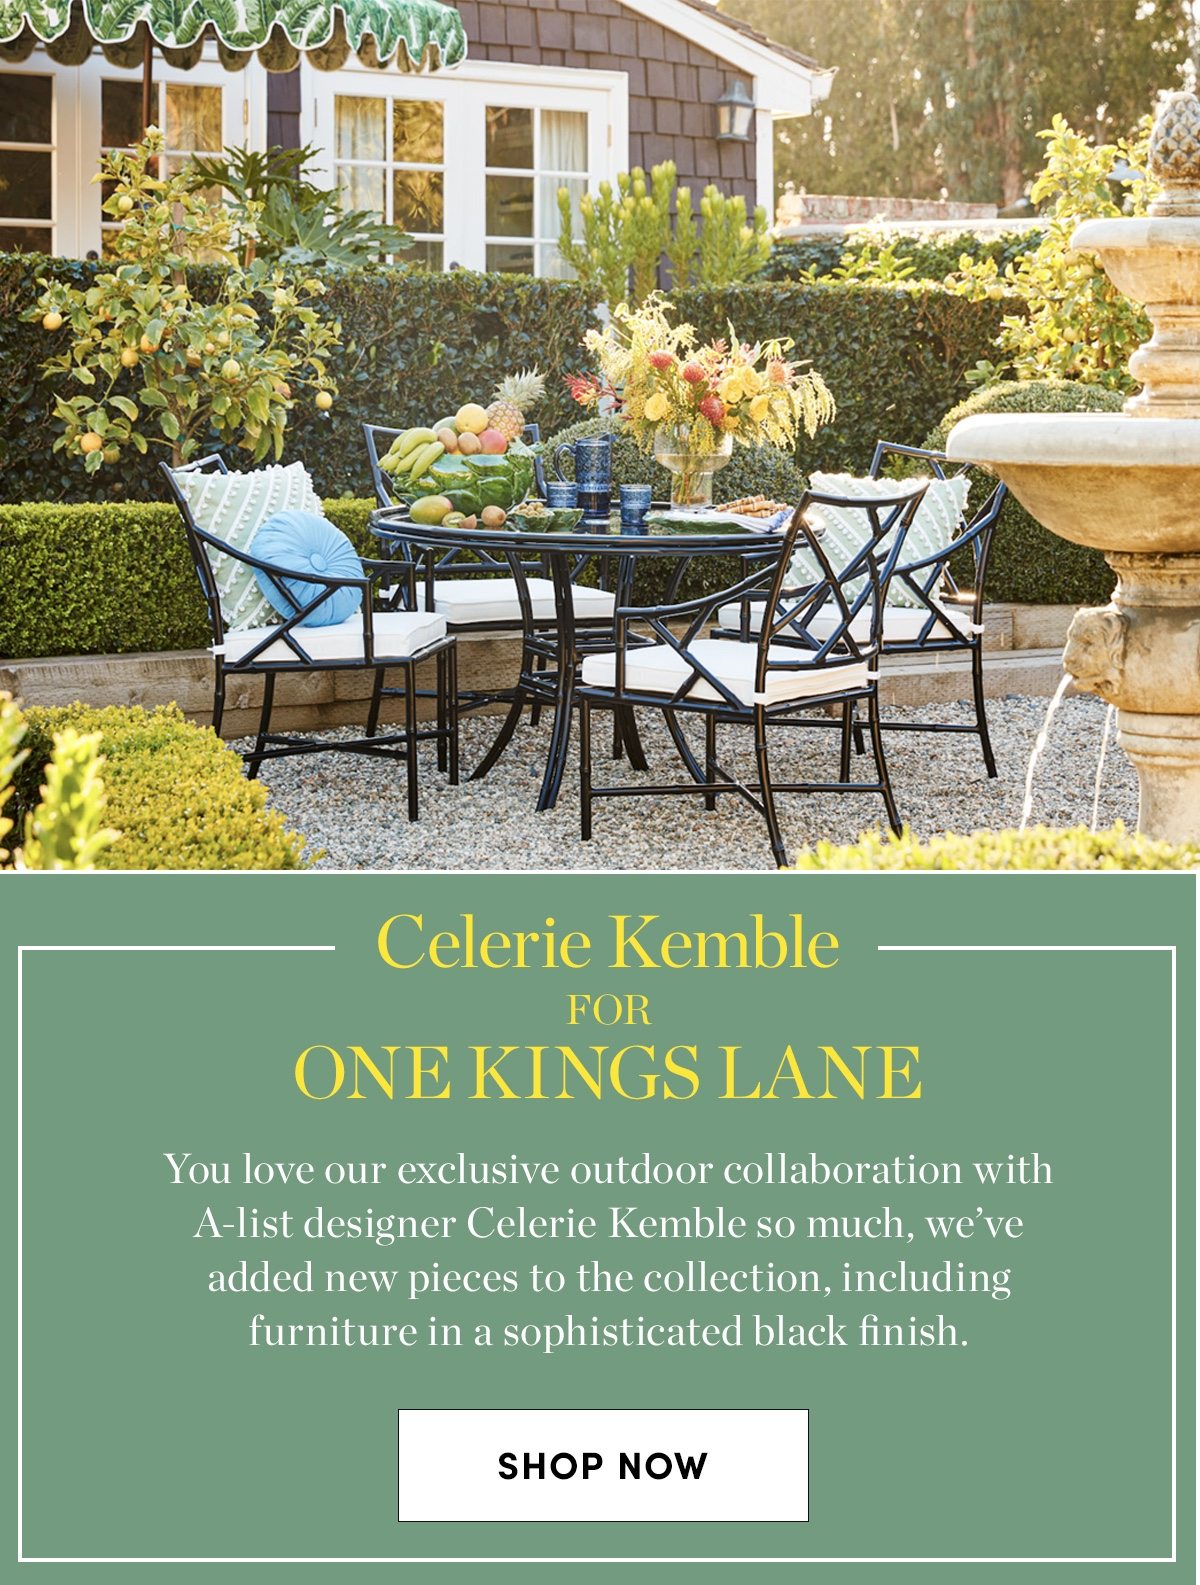 Celerie Kemble for One Kings Lane